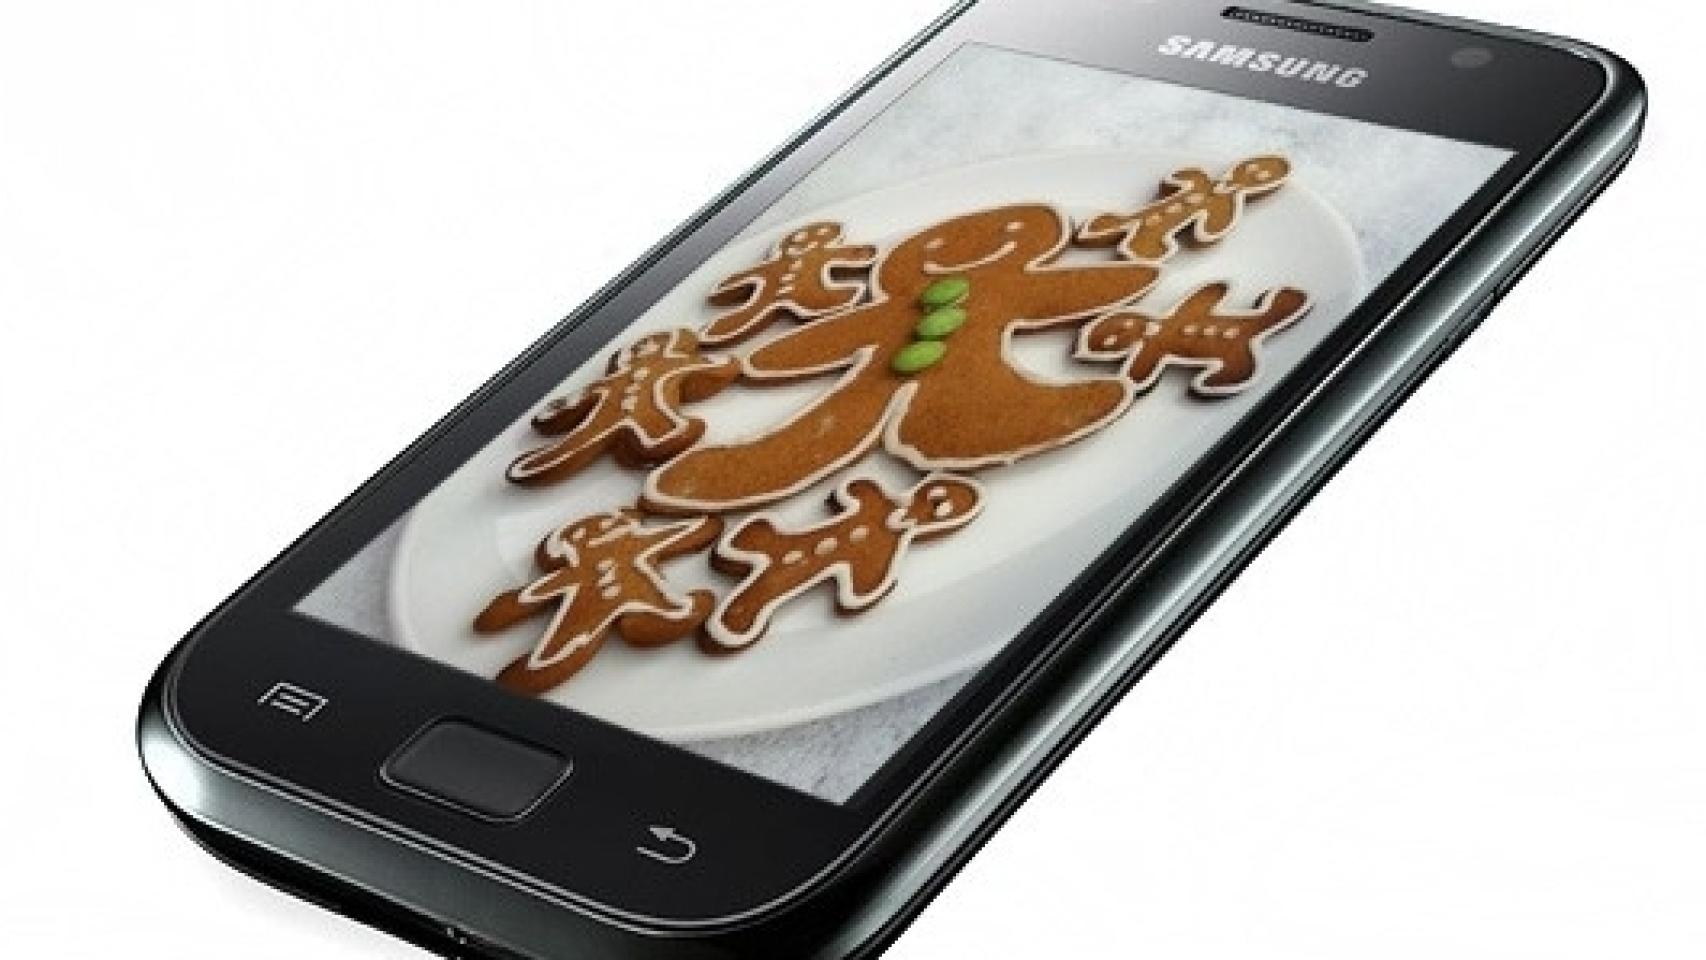 ¿Quieres la primera actualización oficial de Samsung Galaxy S a Gingerbread (Android 2.3.3)?